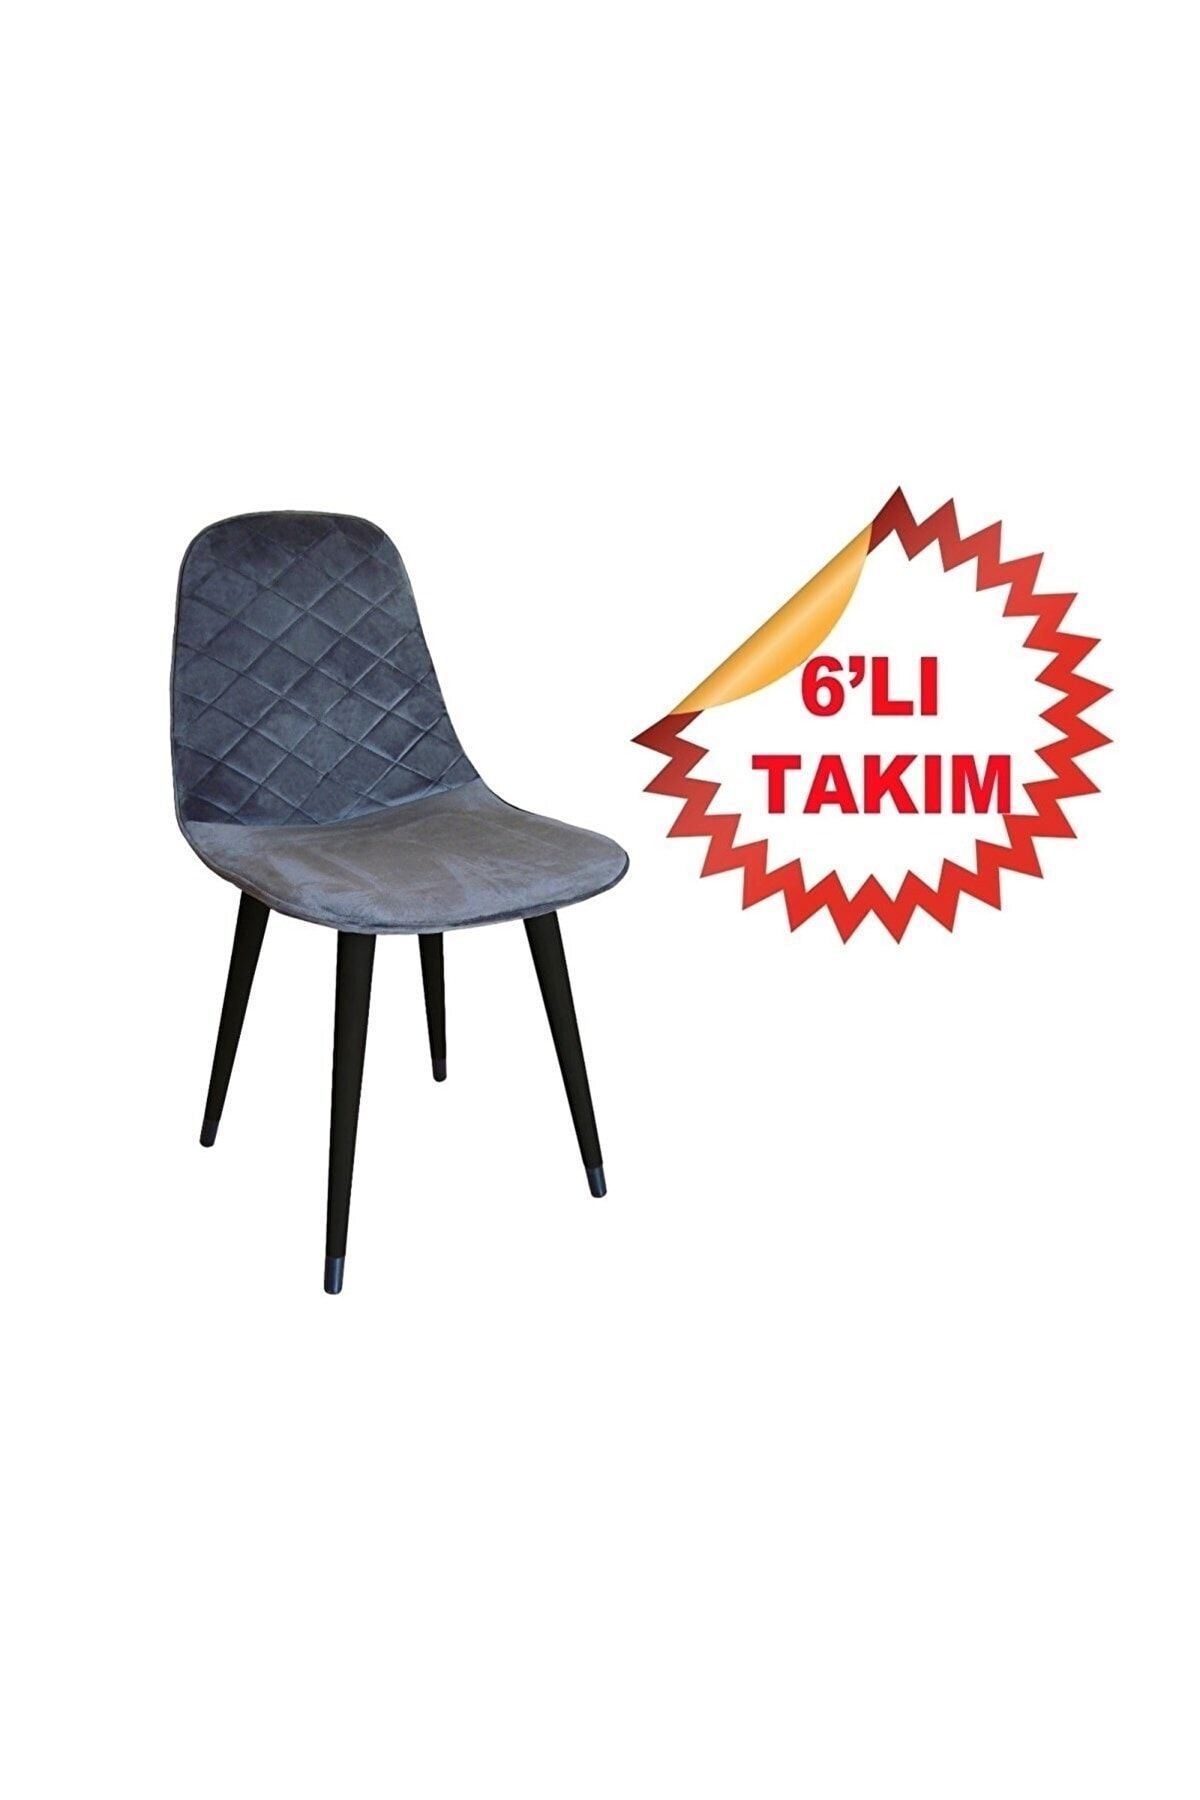 NETAKS Estelia Truva Metal Ayaklı Sandalye 6'lı Takım